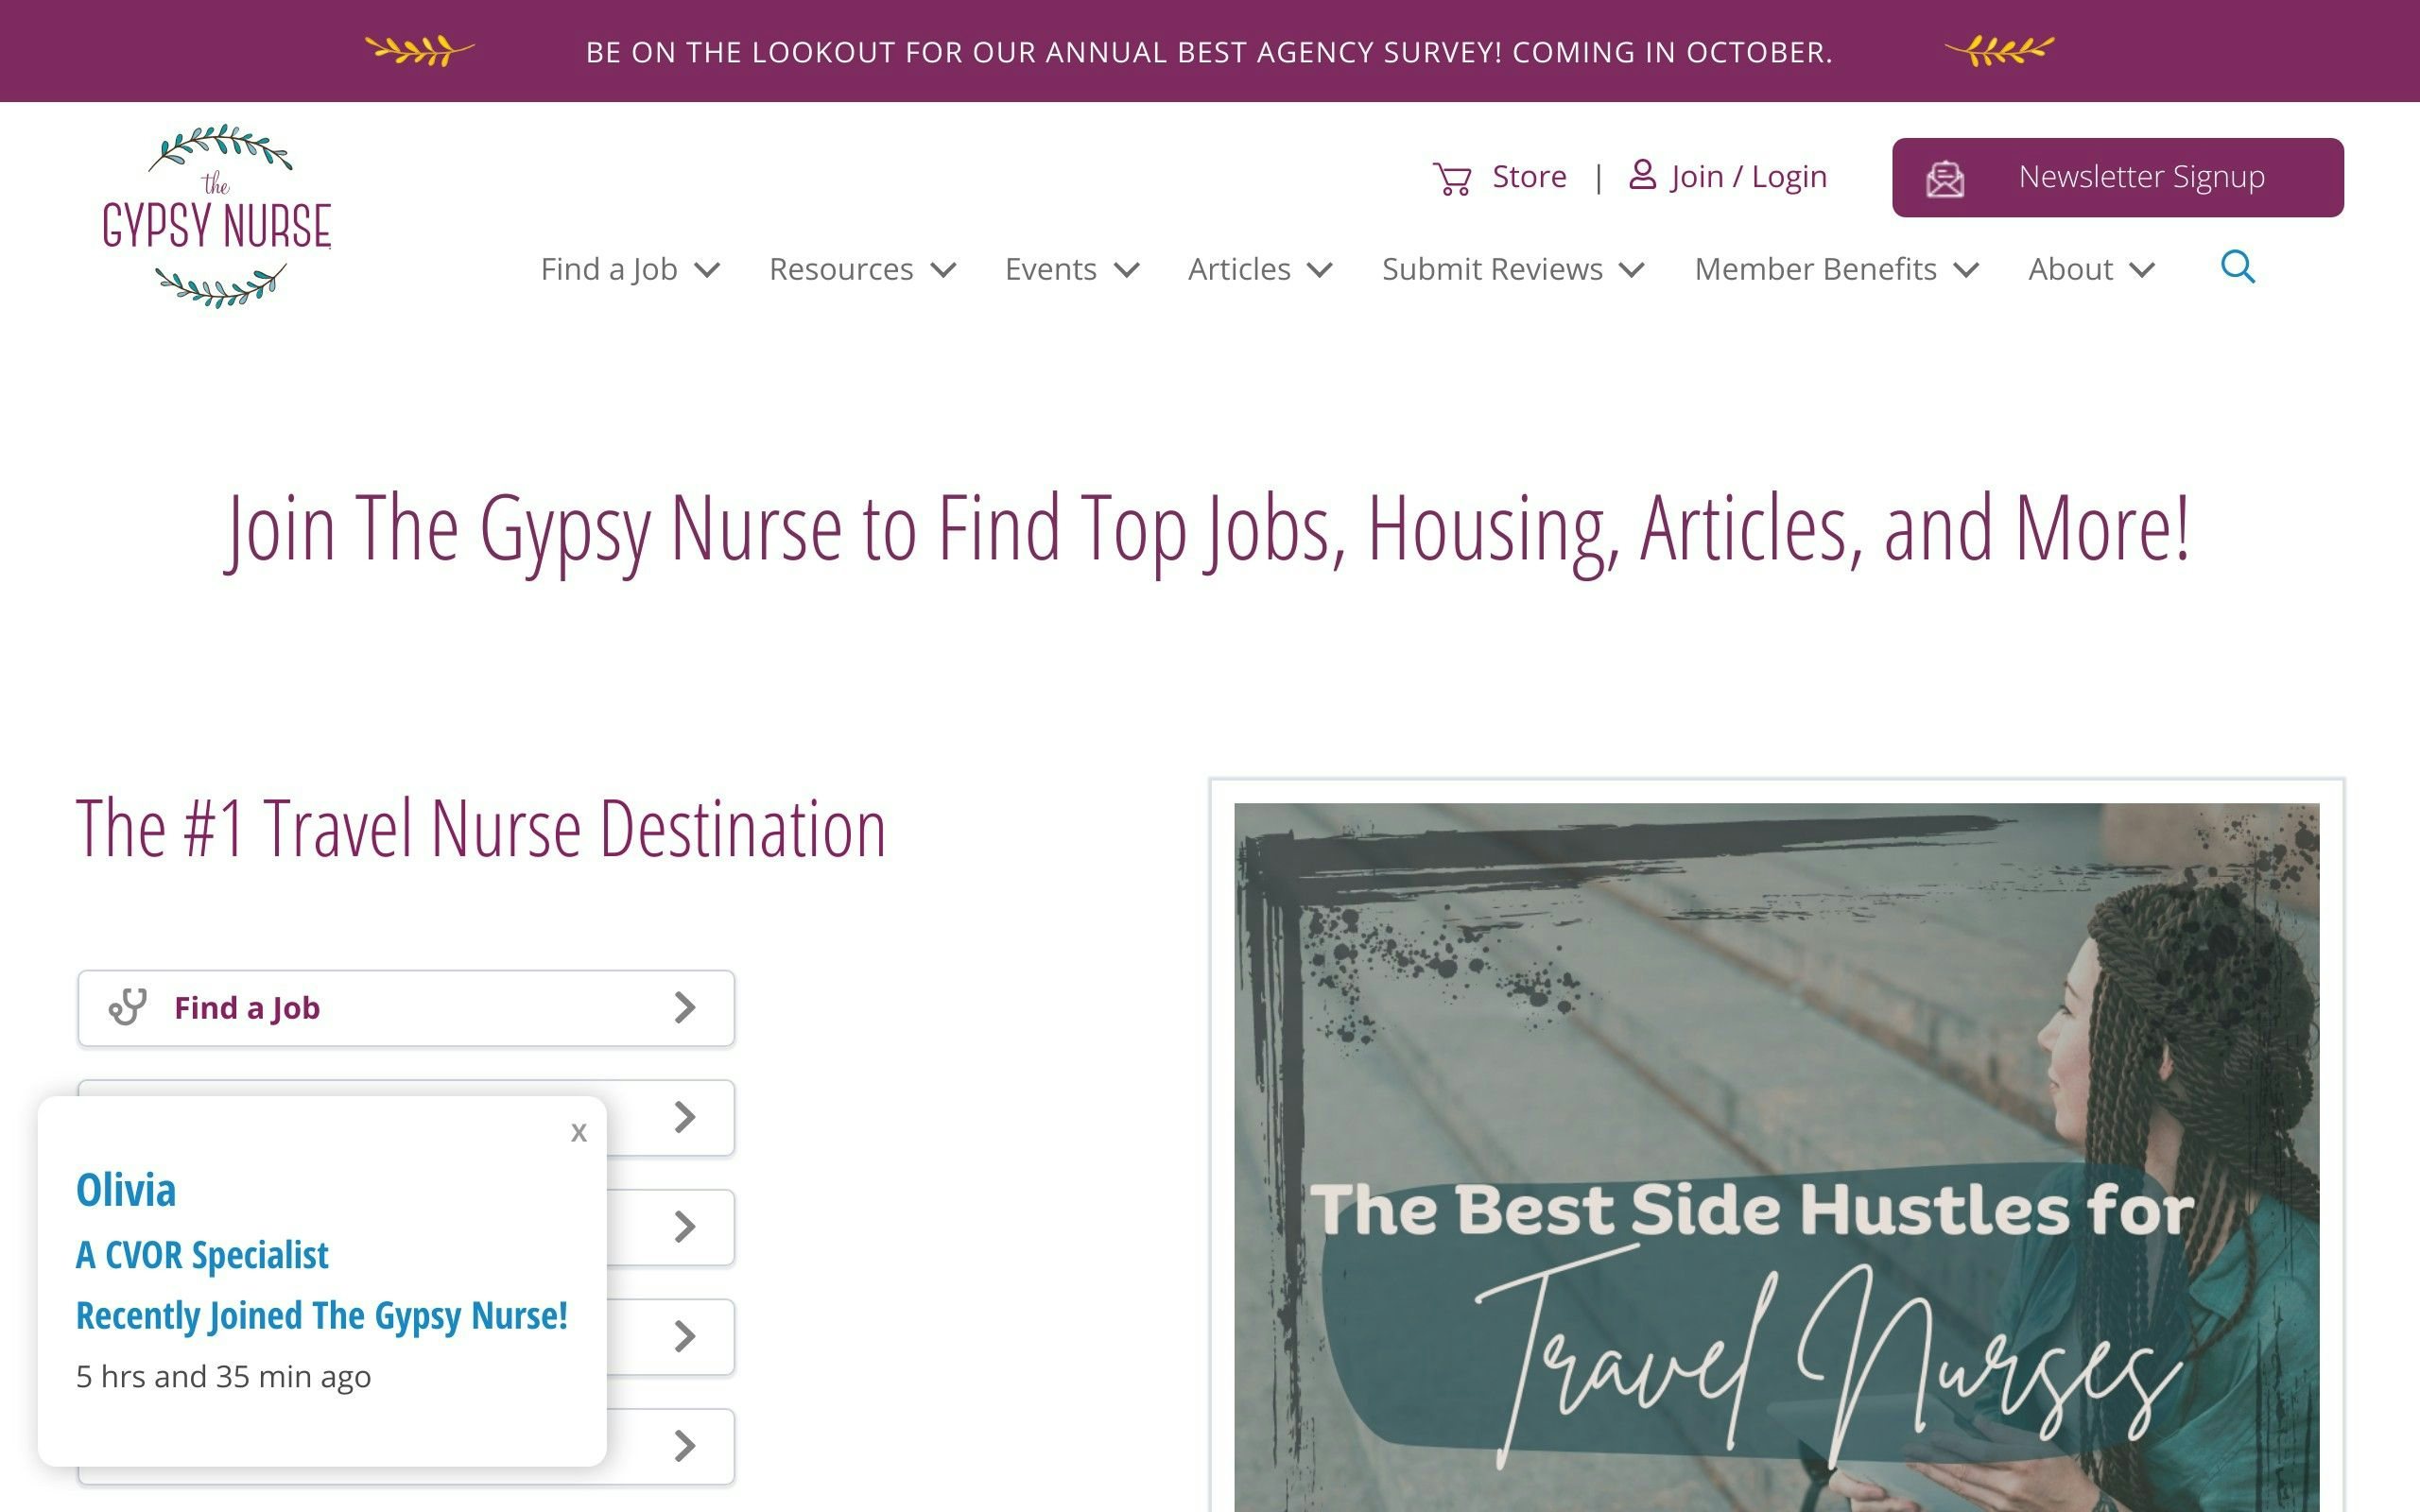 The Gypsy Nurse blog